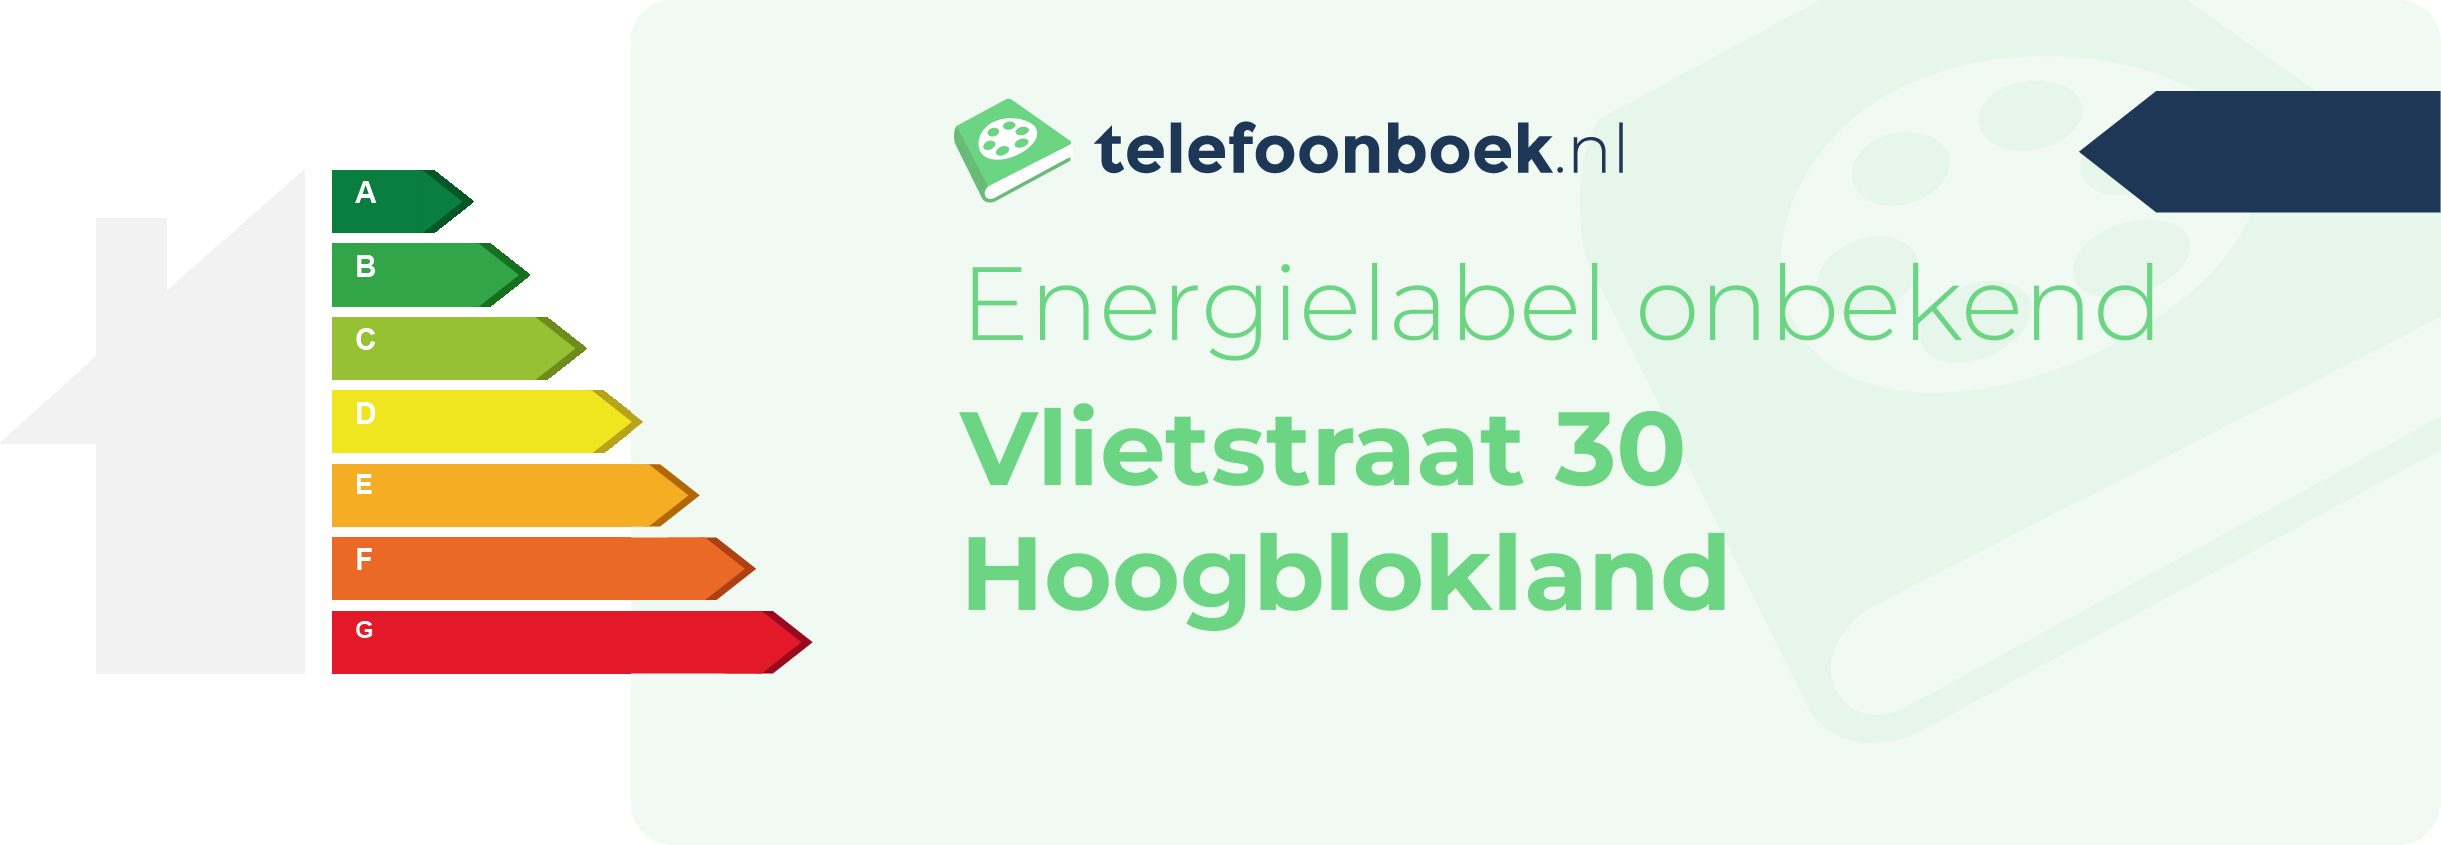 Energielabel Vlietstraat 30 Hoogblokland